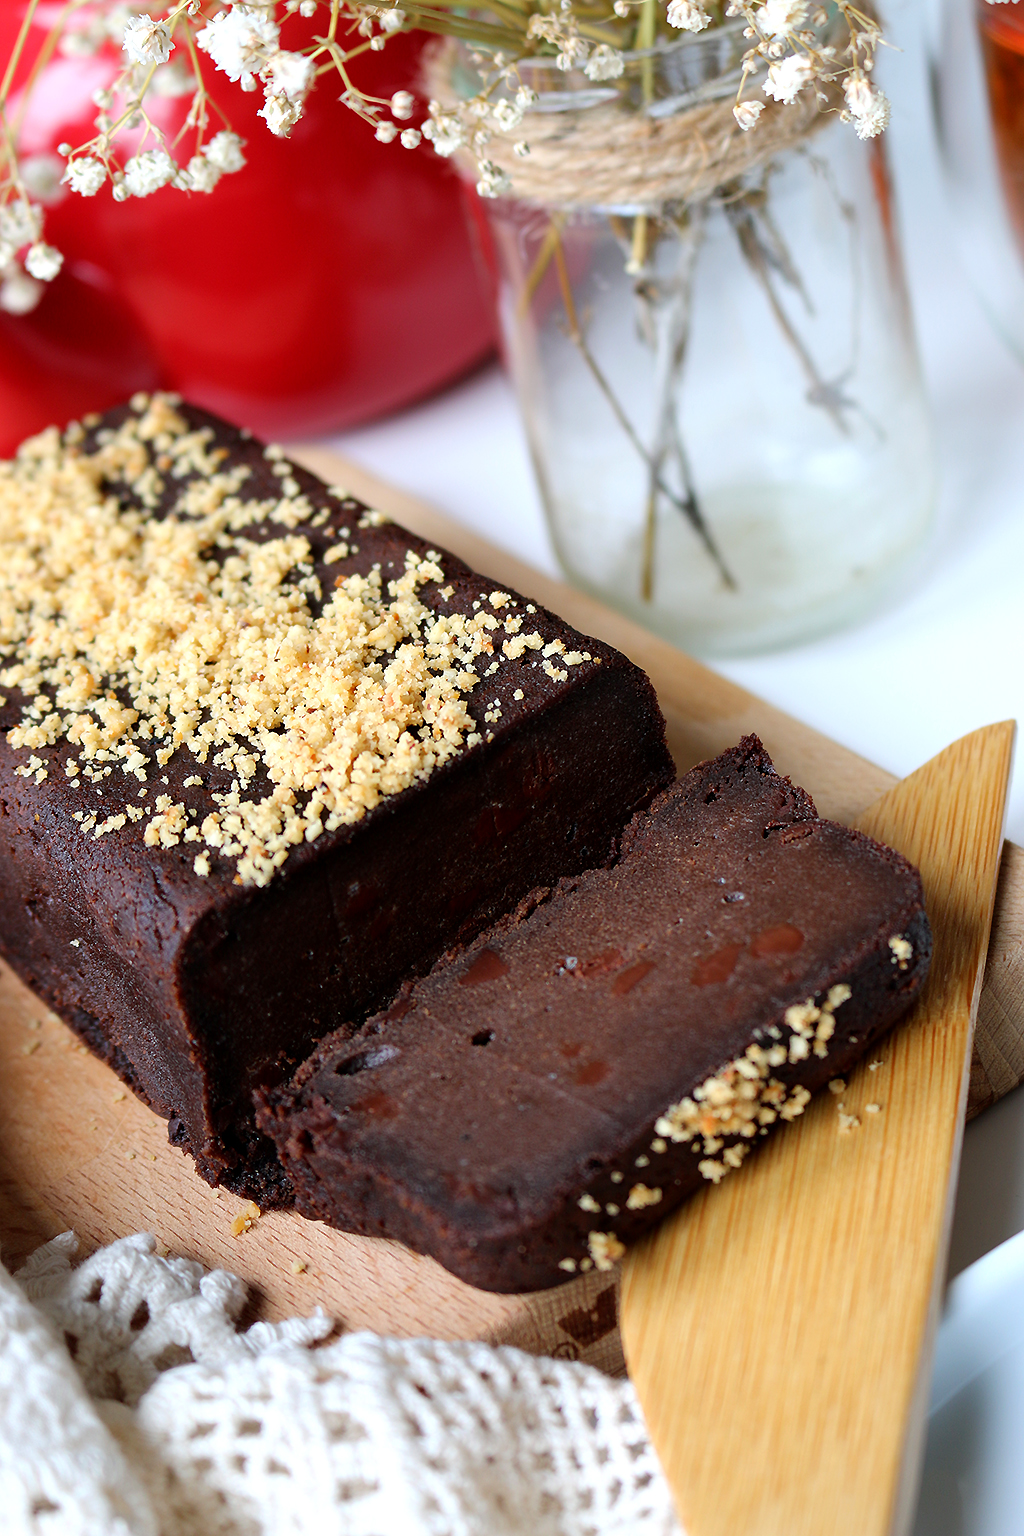 gâteau au chocolat vegan recette healthy vegetarien le petit monde d'elodie